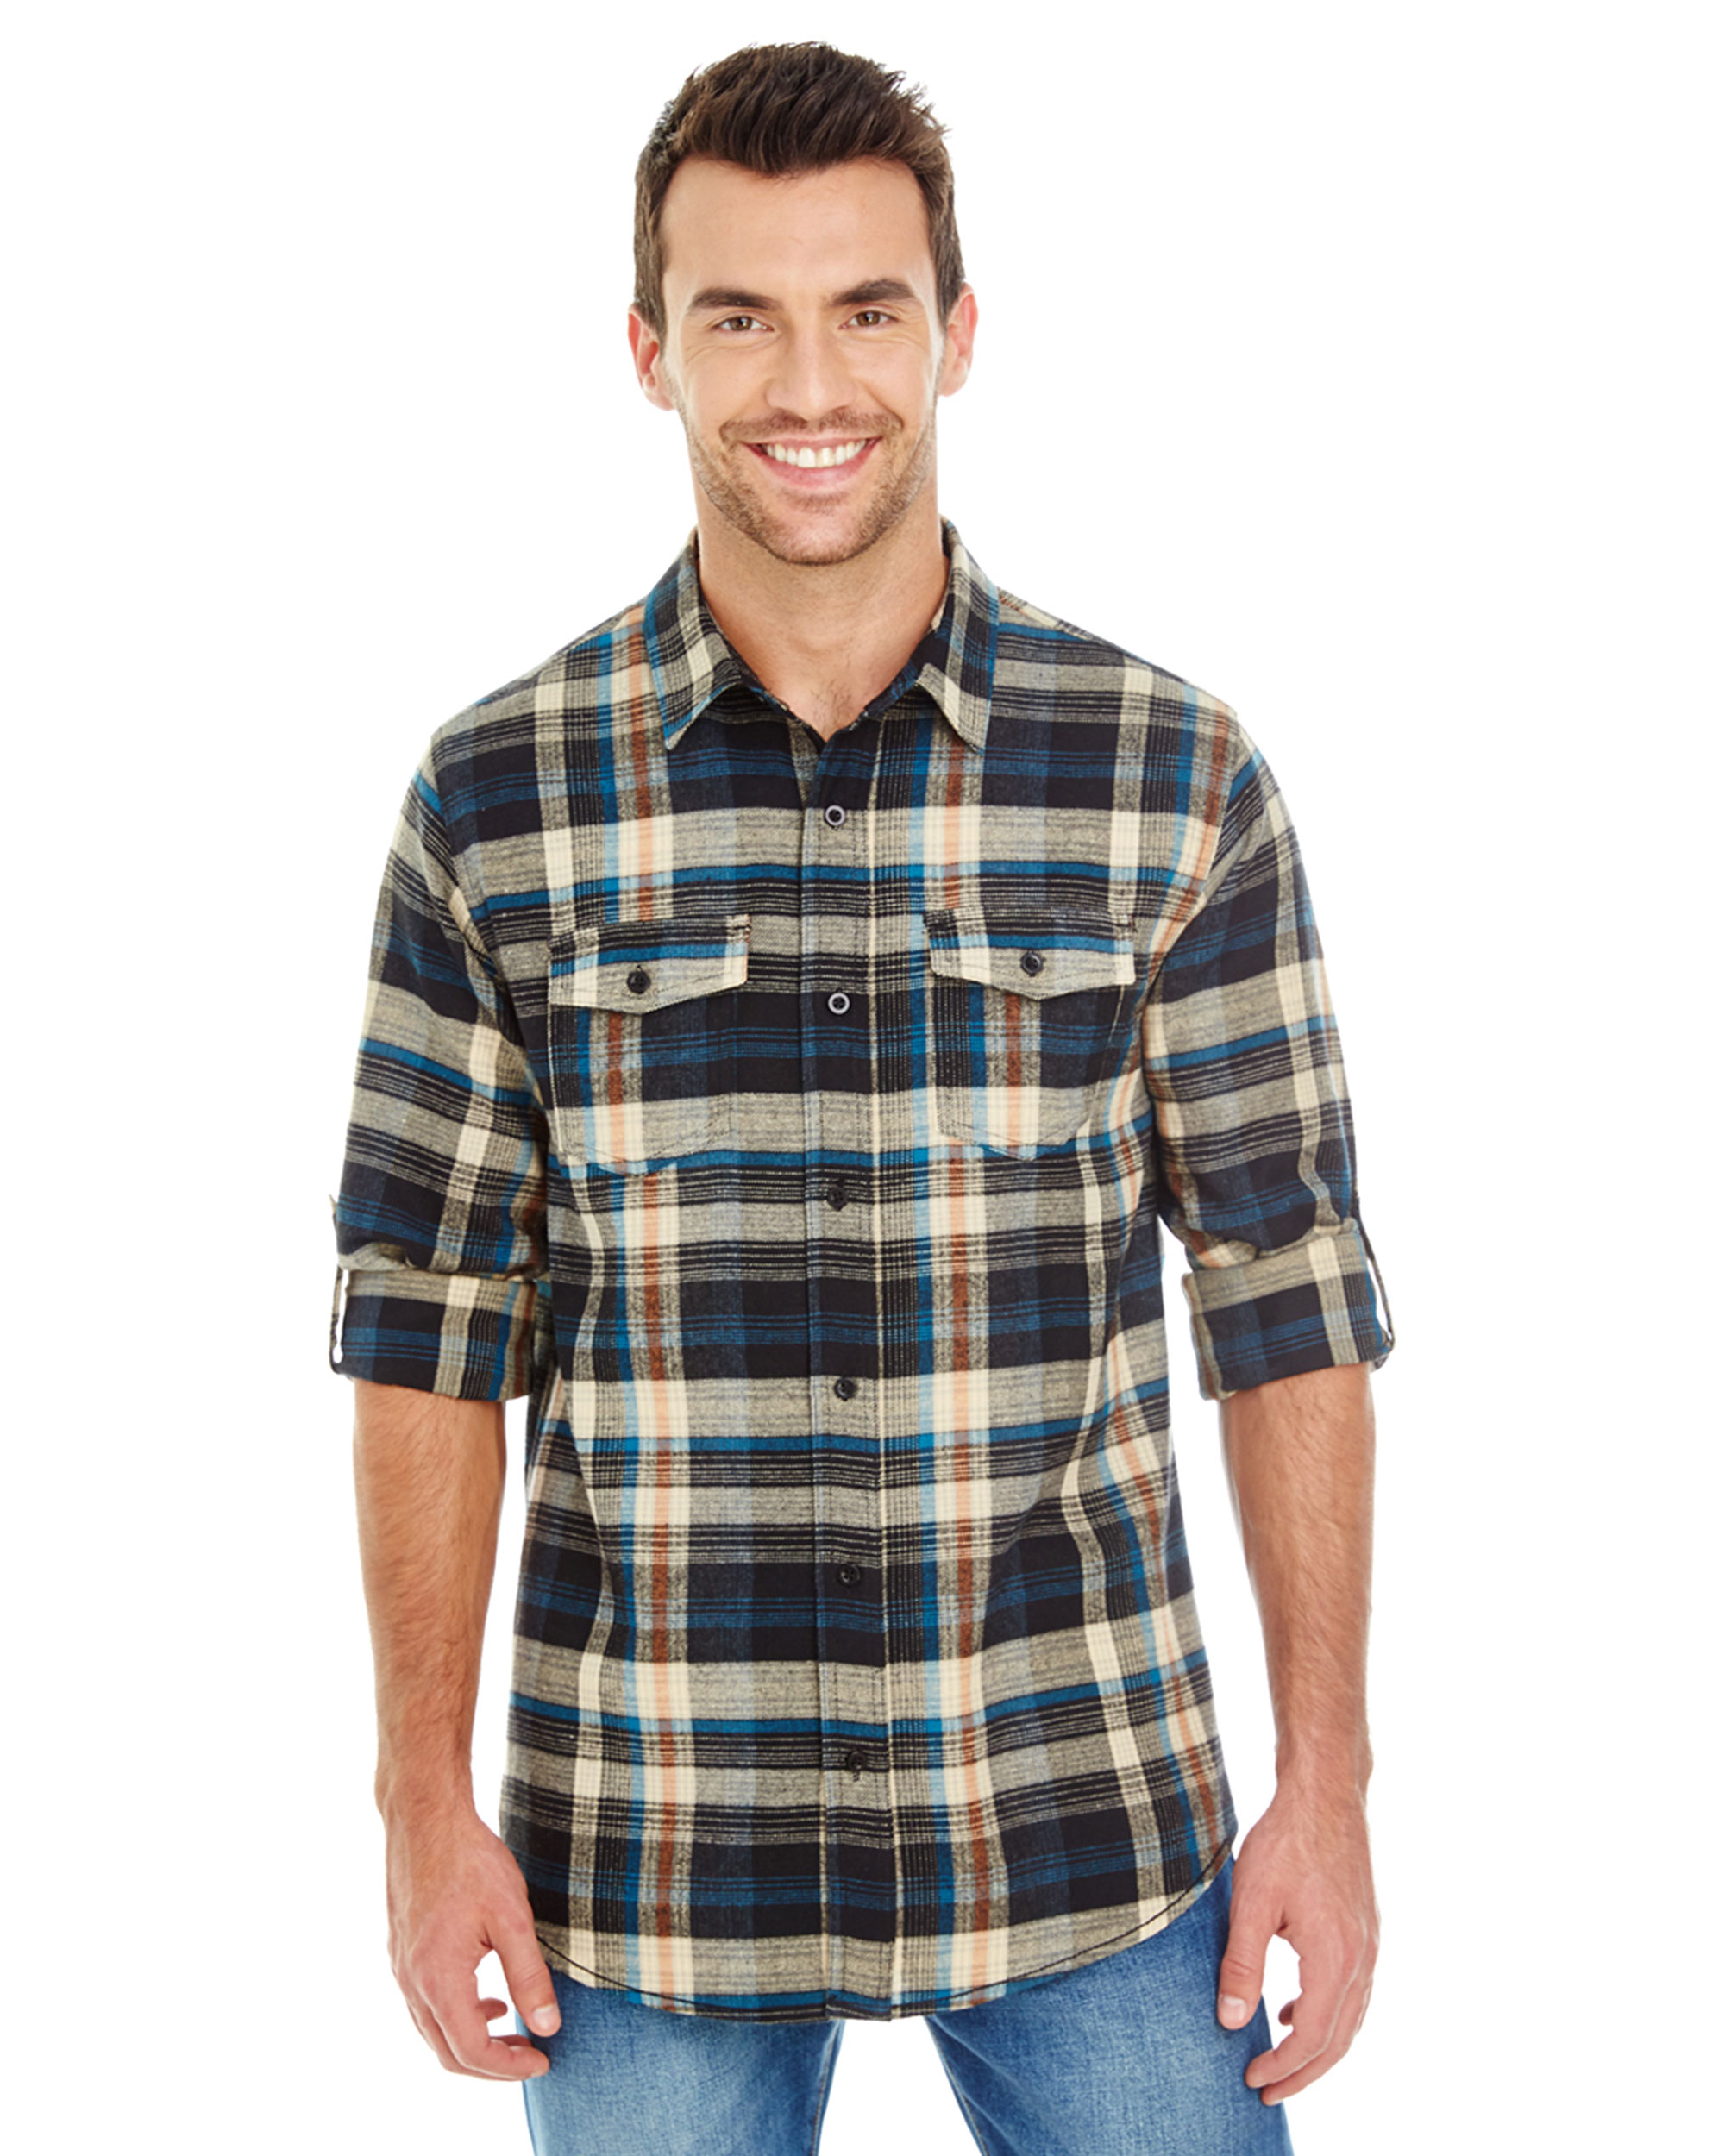 Burnside® B8210 Plaid Flannel Shirt